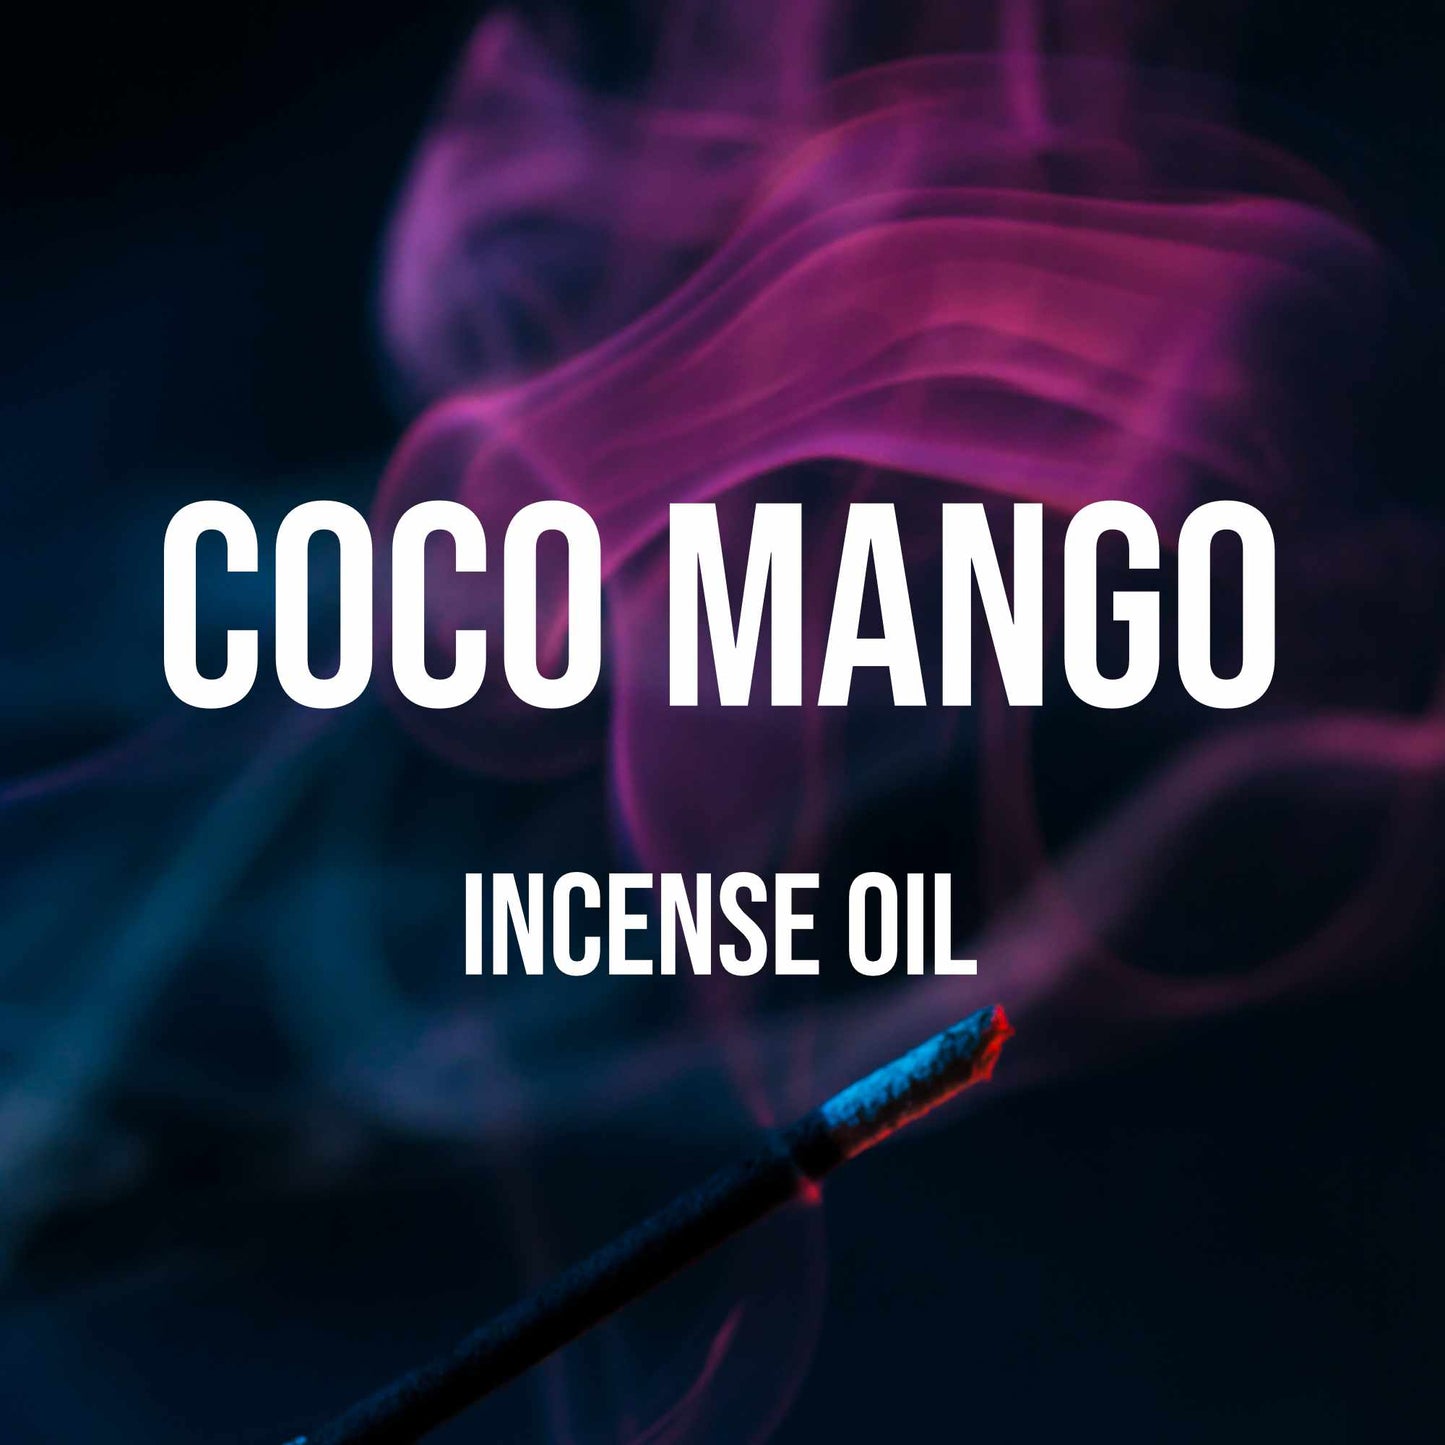 Coco Mango Incense Oil